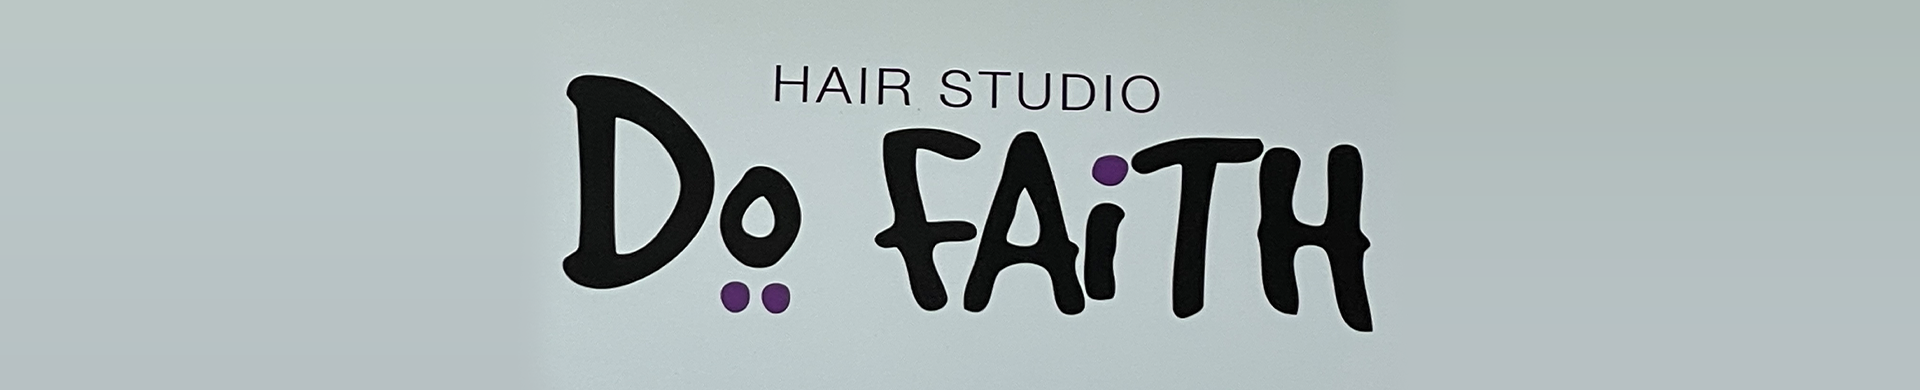 Hair studio DoFAiTH